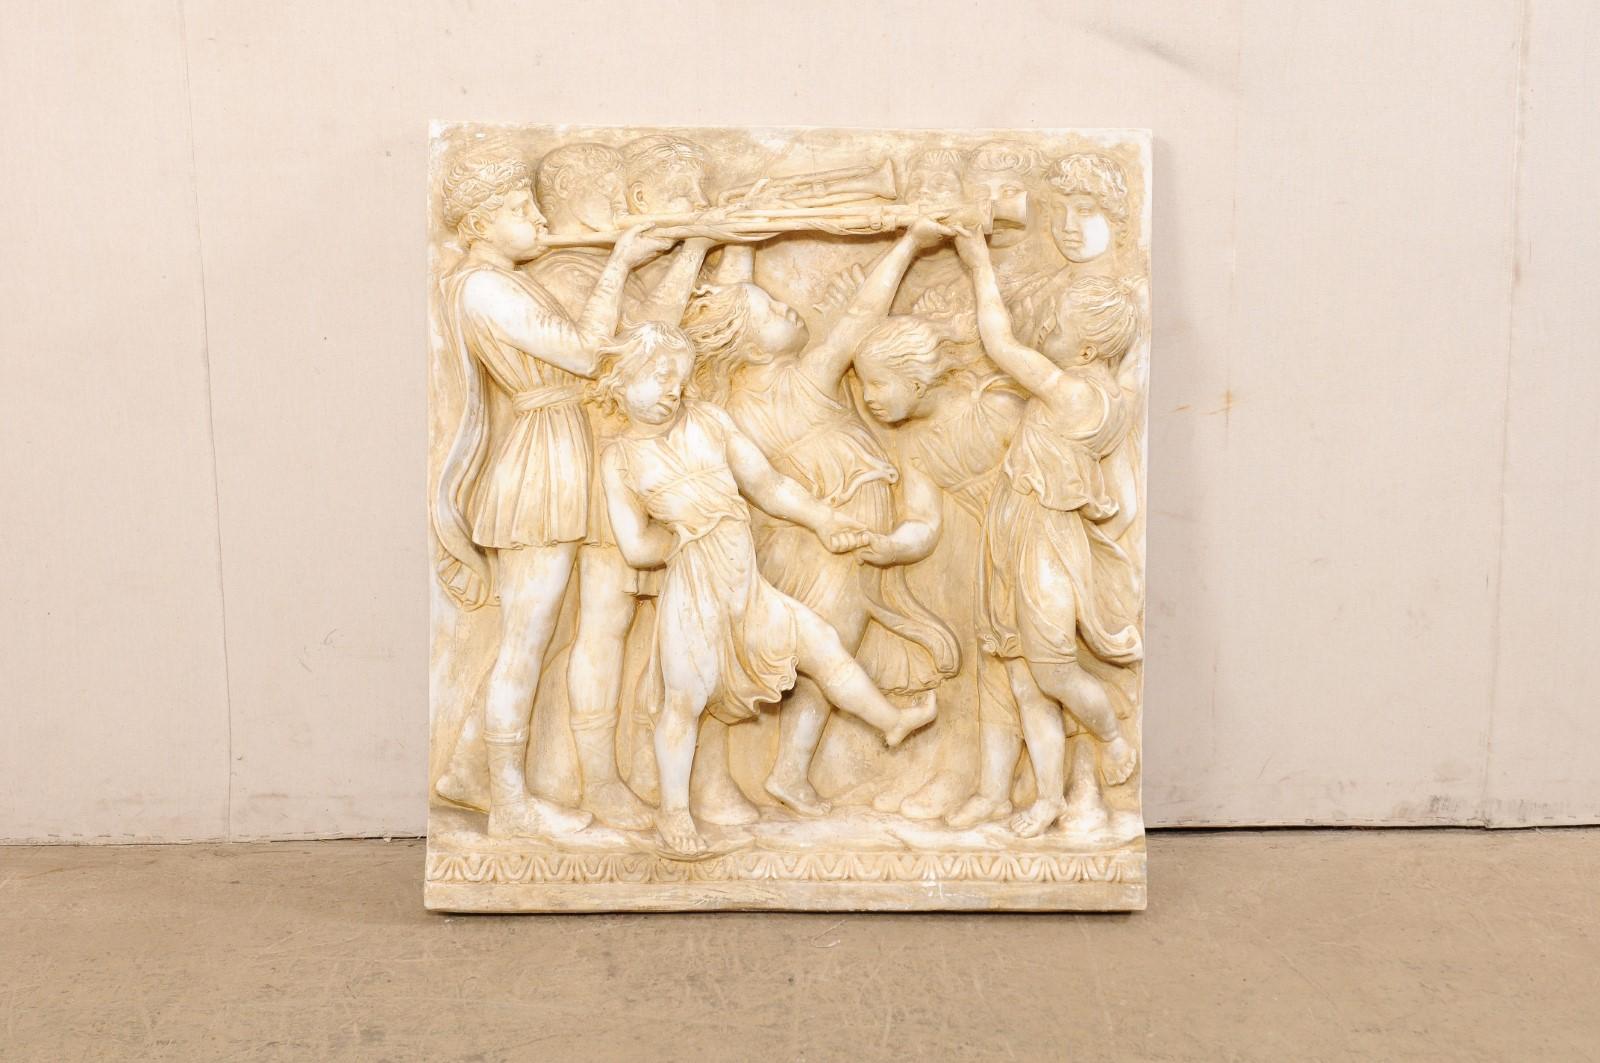 Plaque en relief de sculpture murale en plâtre italienne, sur le thème de la figure romaine, datant du milieu du XXe siècle. Cette œuvre d'art vintage, créée en plâtre et en relief, représente de jeunes enfants en train de jouer sous trois joueurs